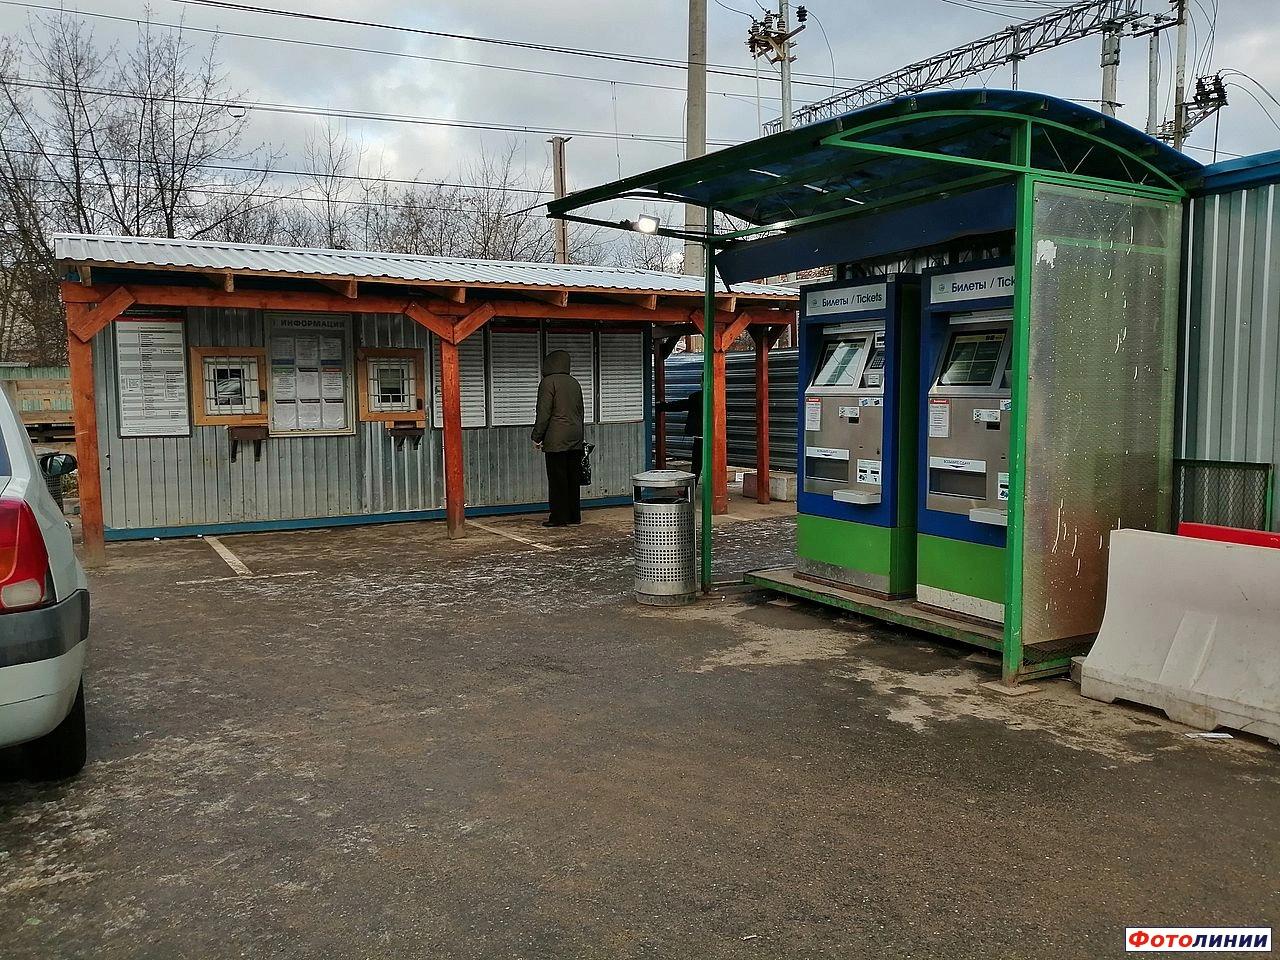 Пригородная кассы и билетные автоматы у временной второй платформы